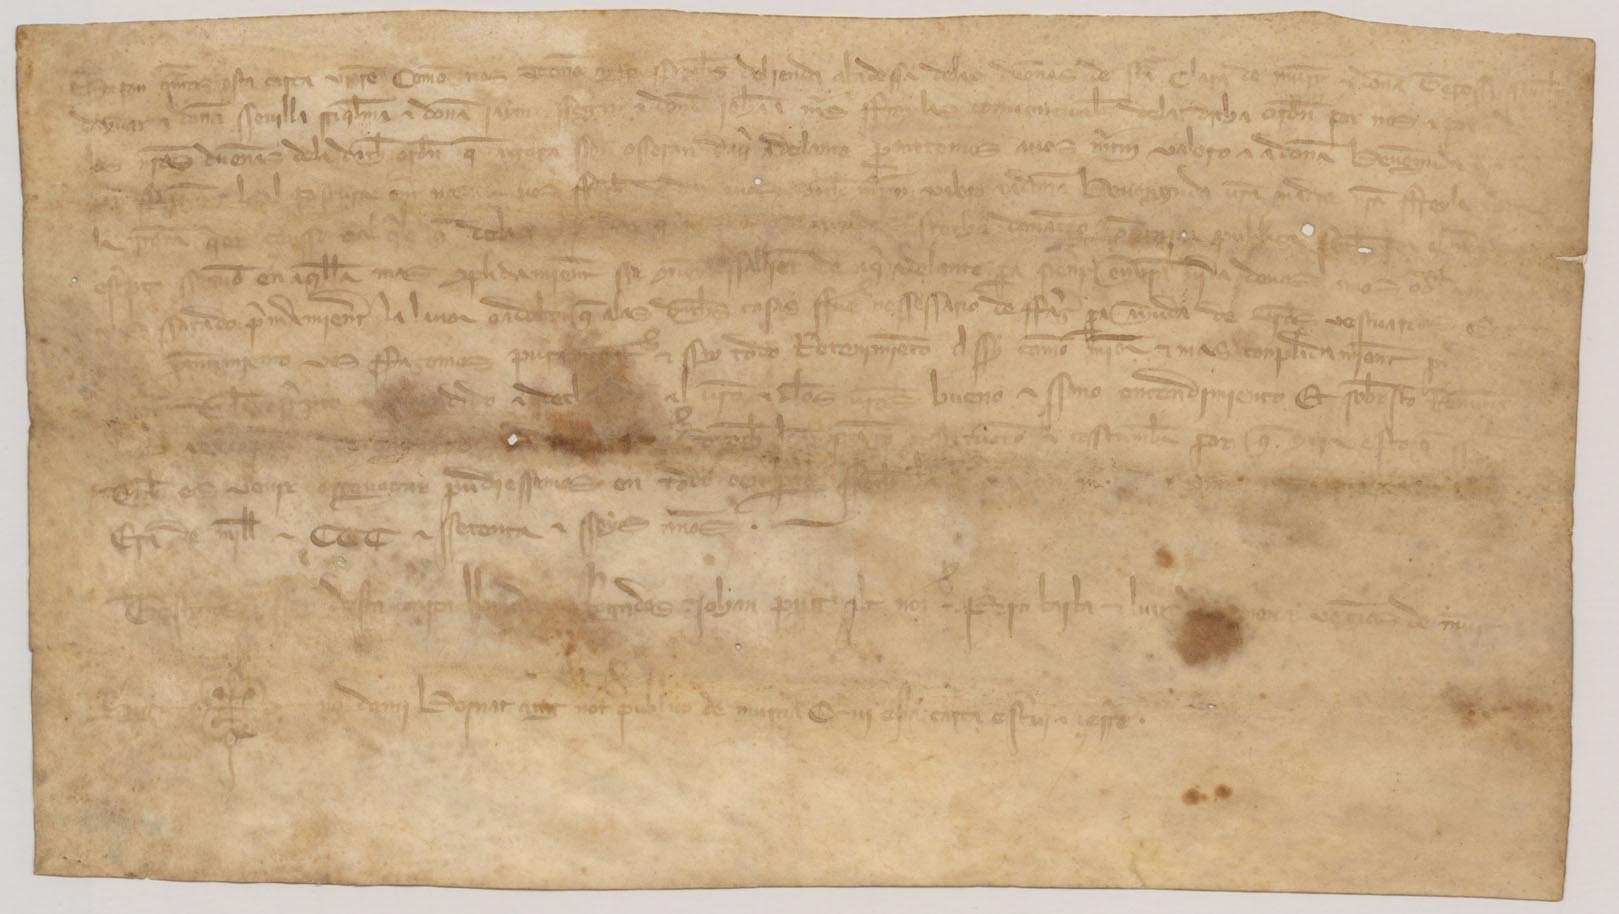 Carta de compromiso de la abadesa y monjas de Santa Clara de dar la renta de unas casas a Martín Valero y a doña Benvenguda, su madre y monja, para ayuda de sus vestuarios.